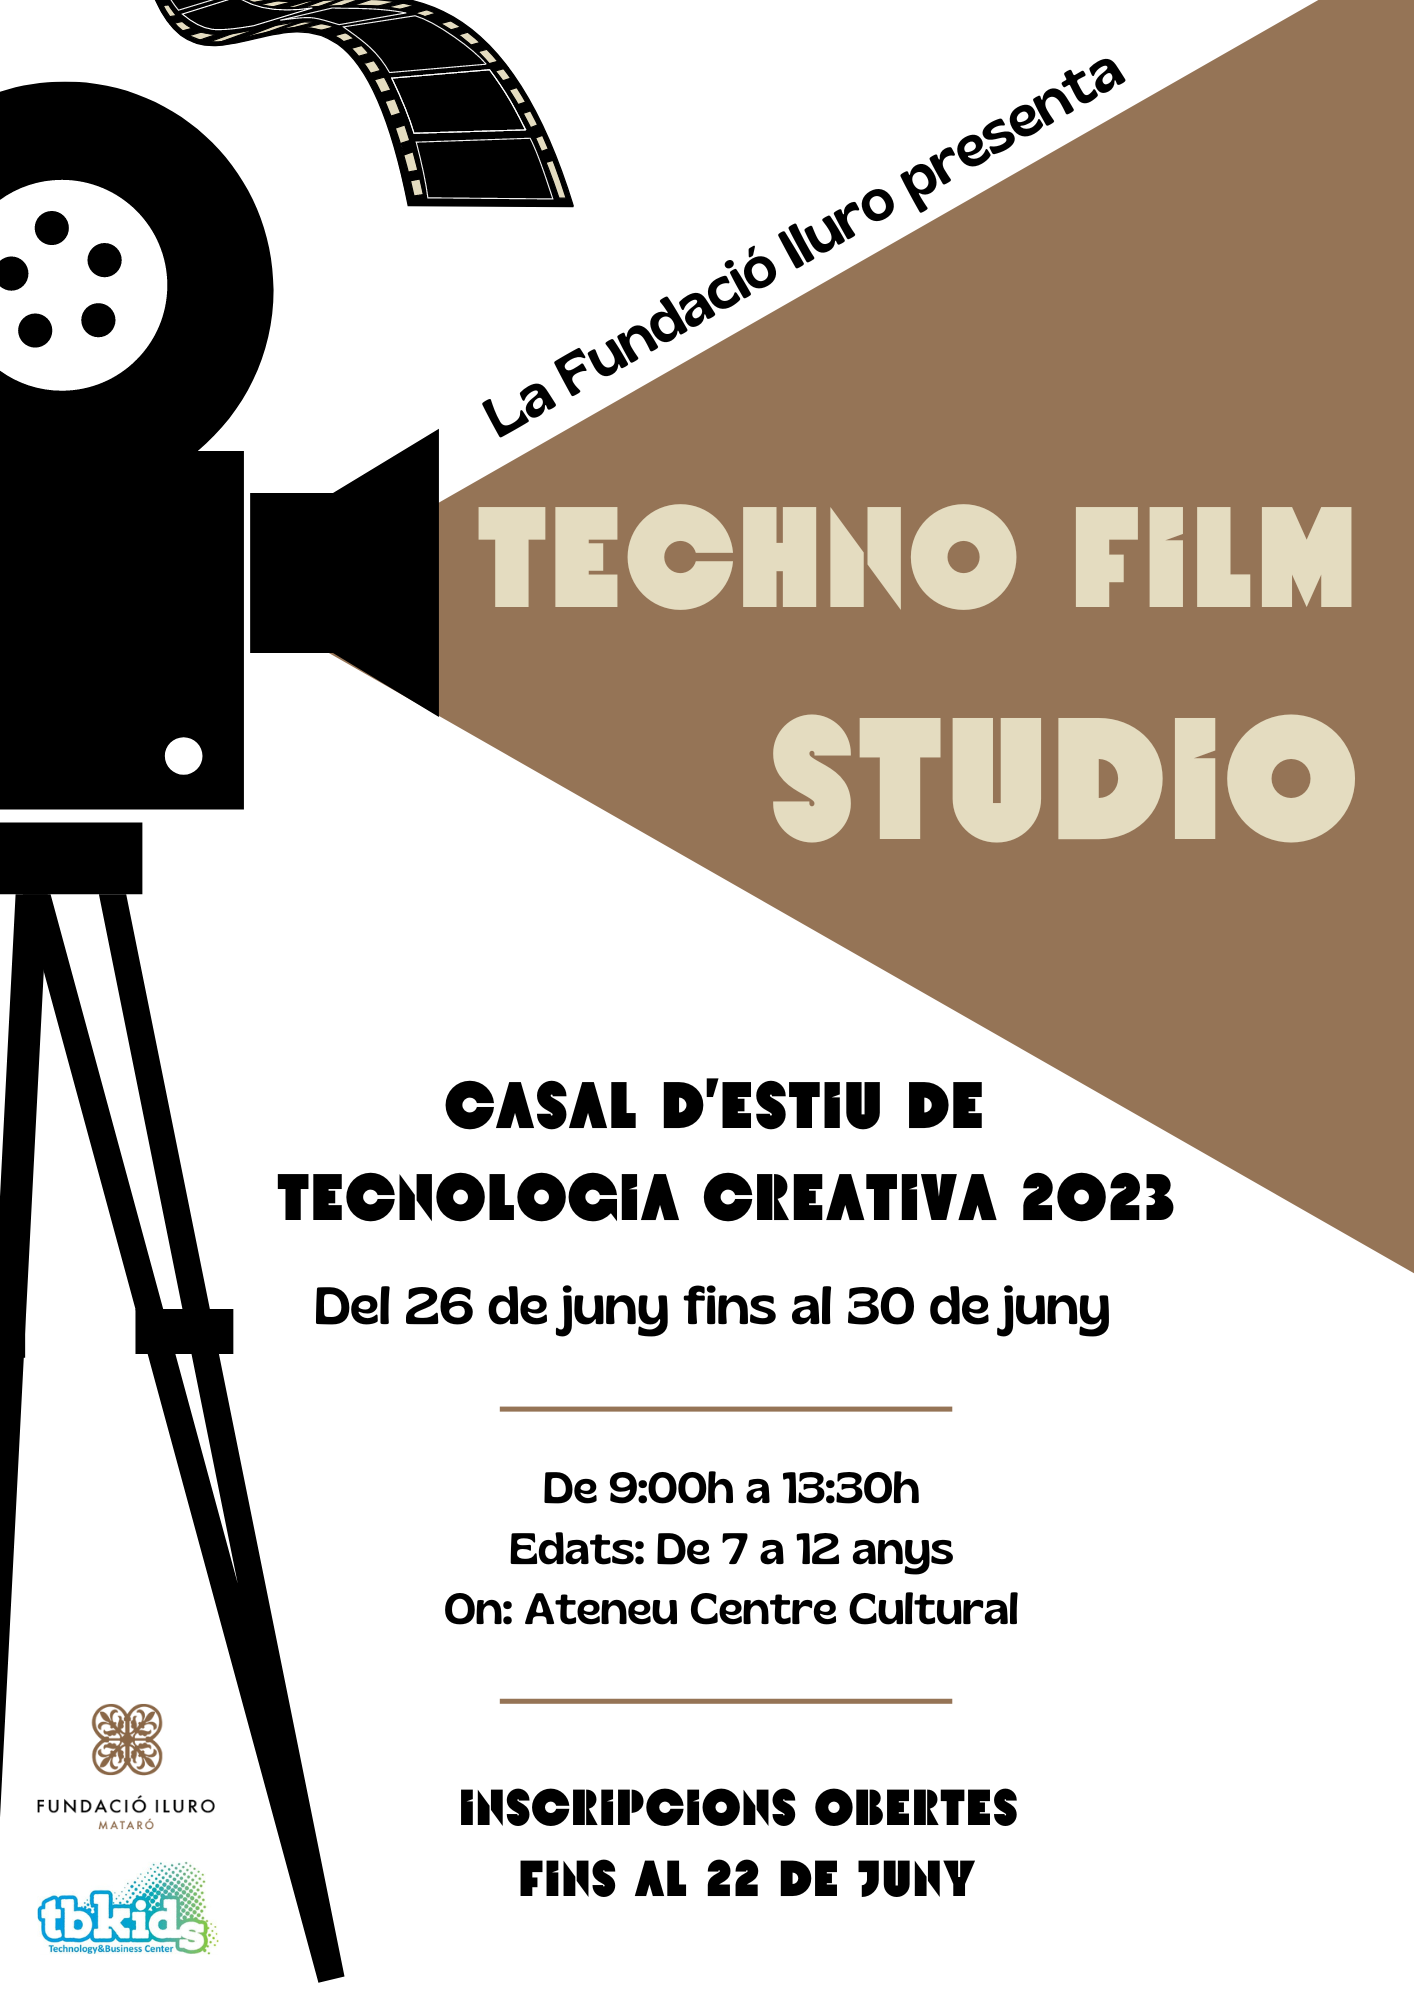 Arriba El Techno Film Studio, El Casal D’estiu De Tecnologia Creativa